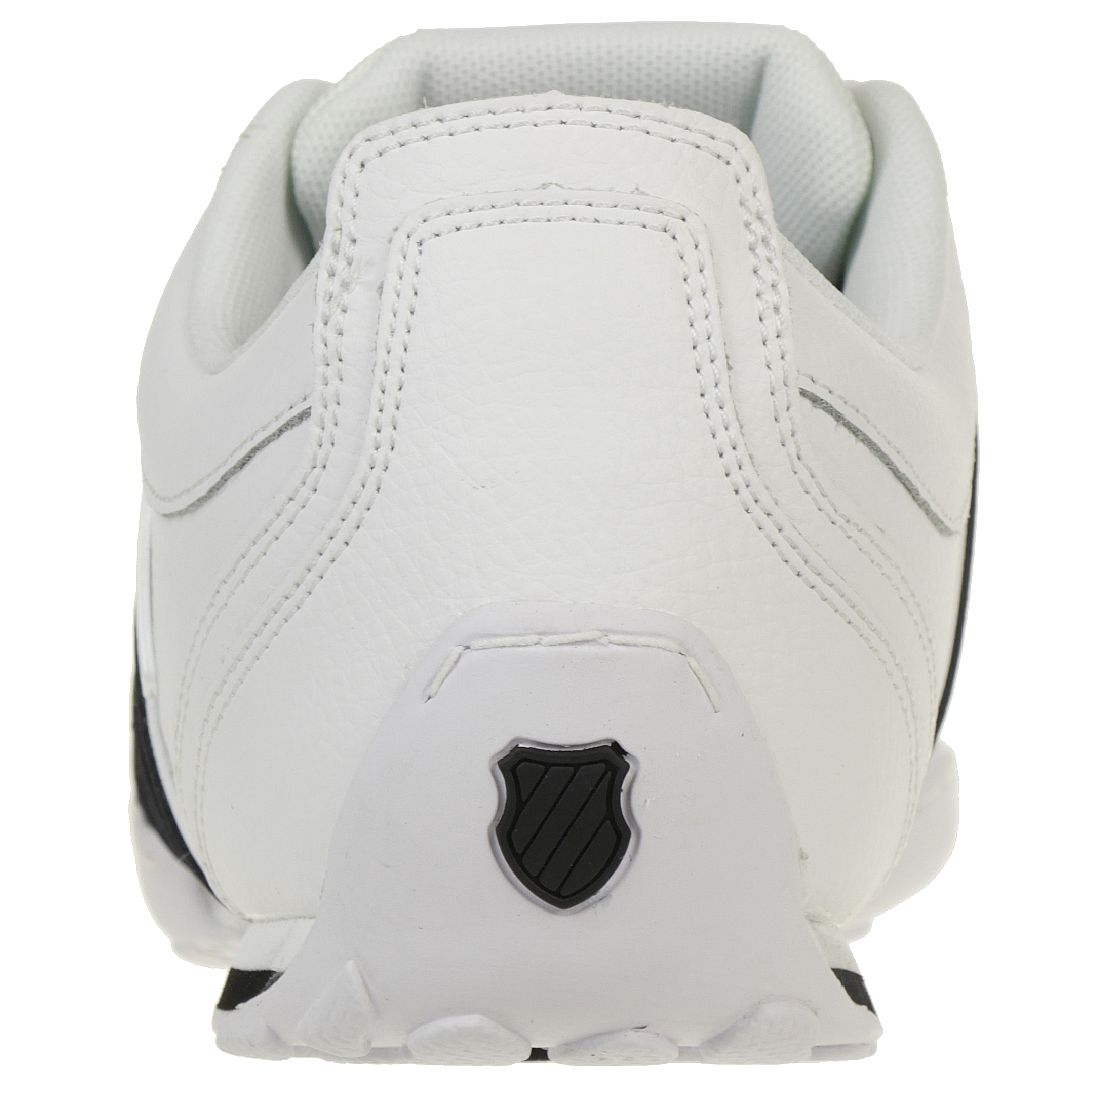 K-SWISS Arvee 1.5 Schuhe Sneaker weiss 02453-164-M